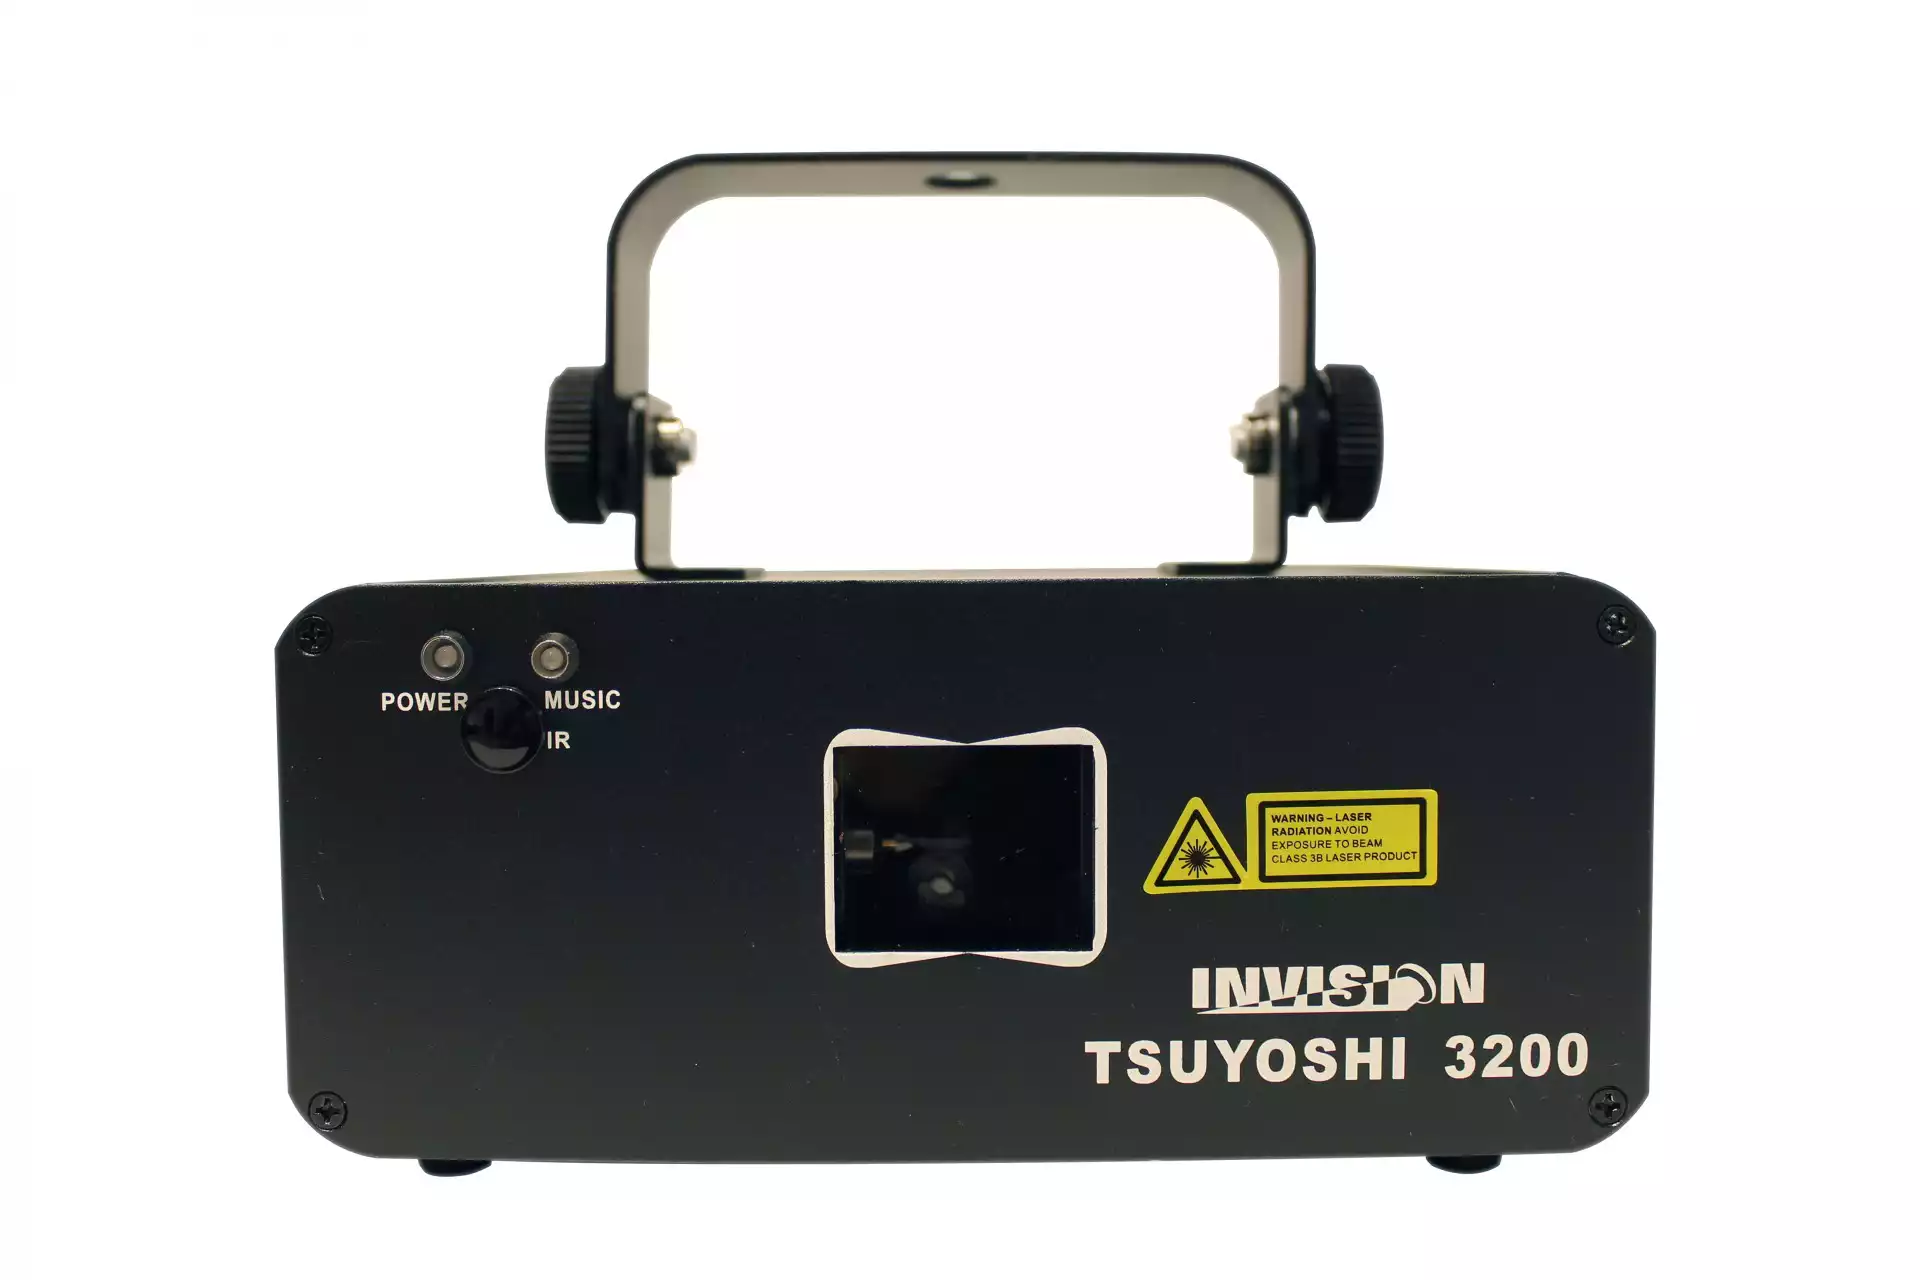 INVISION TSUYOSHI 3200 - Laser